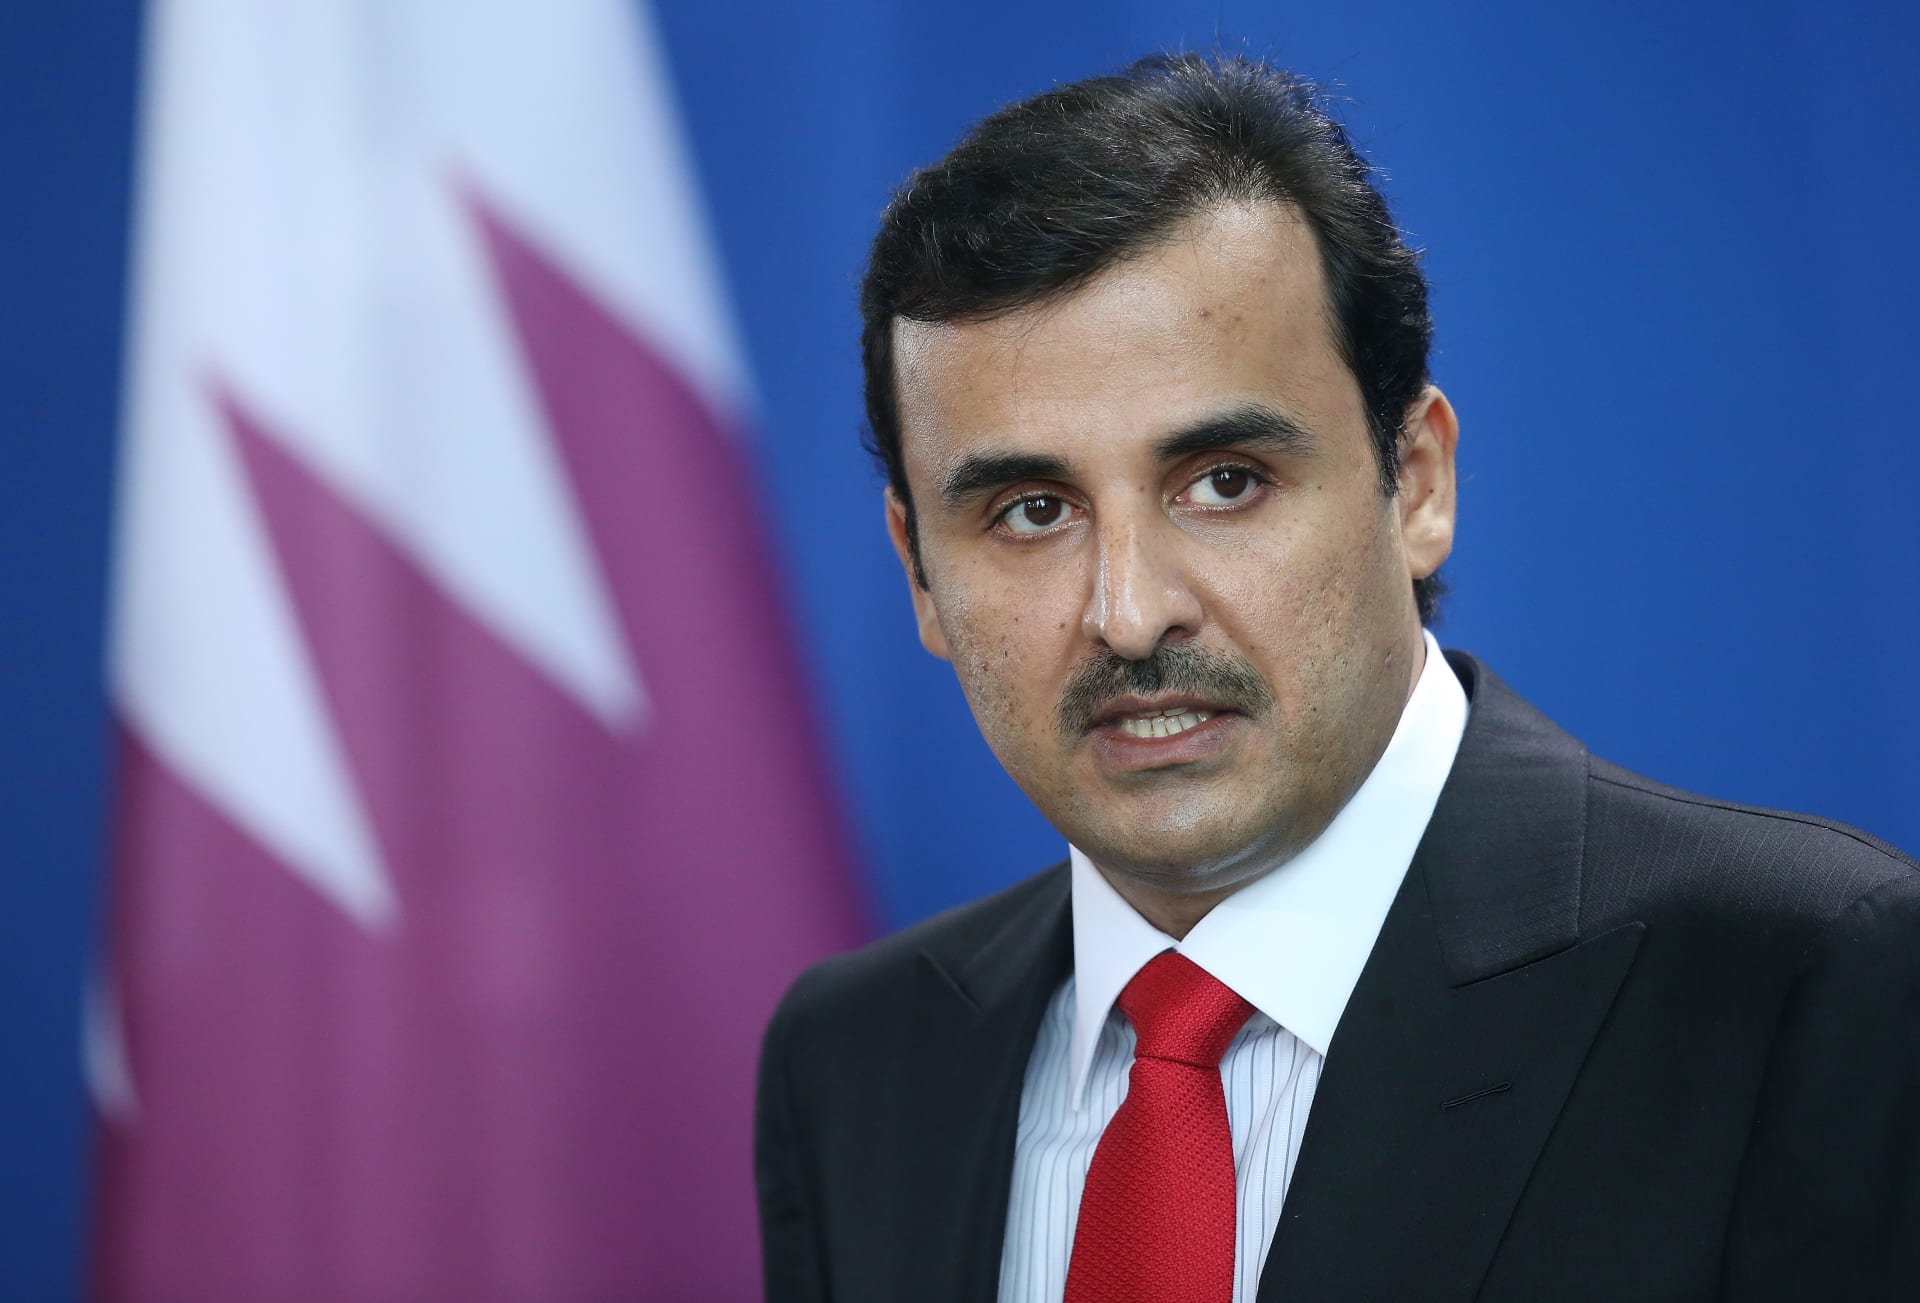 اجتماع رباعي للتنسيق حيال قطر وخطاب منتظر لأميرها بالأمم المتحدة